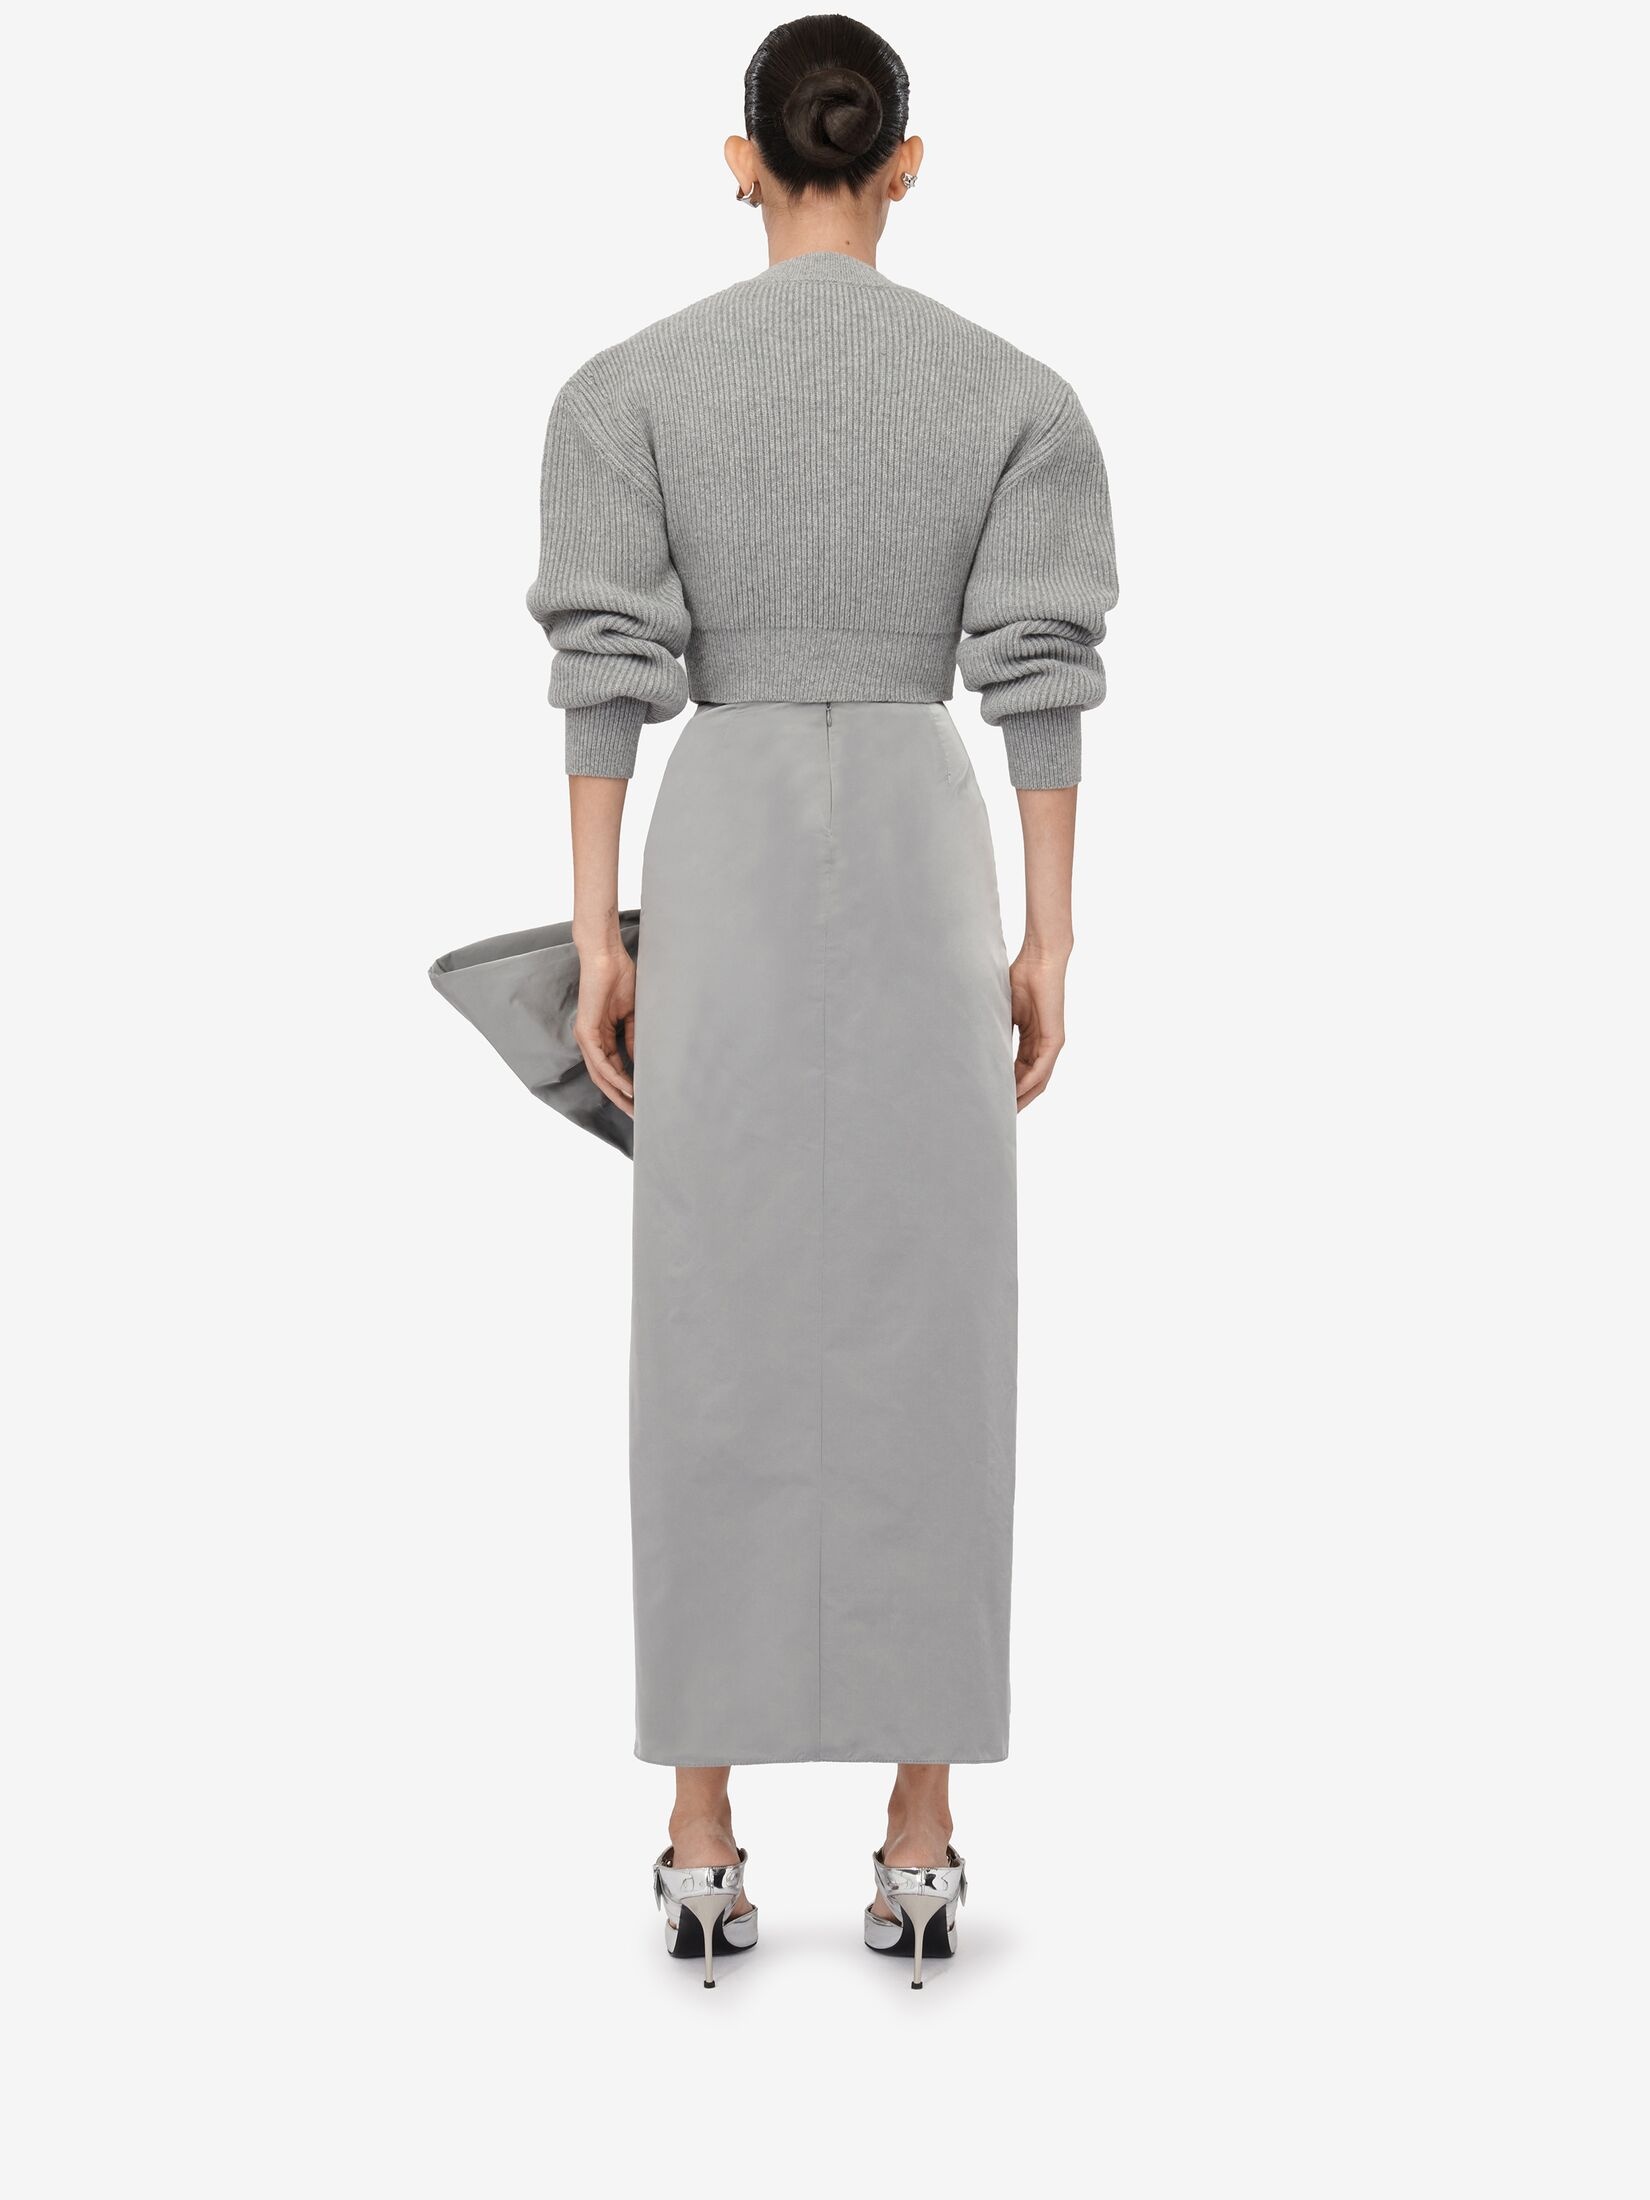 Women's Bow Detail Slim Skirt in Silver - 4